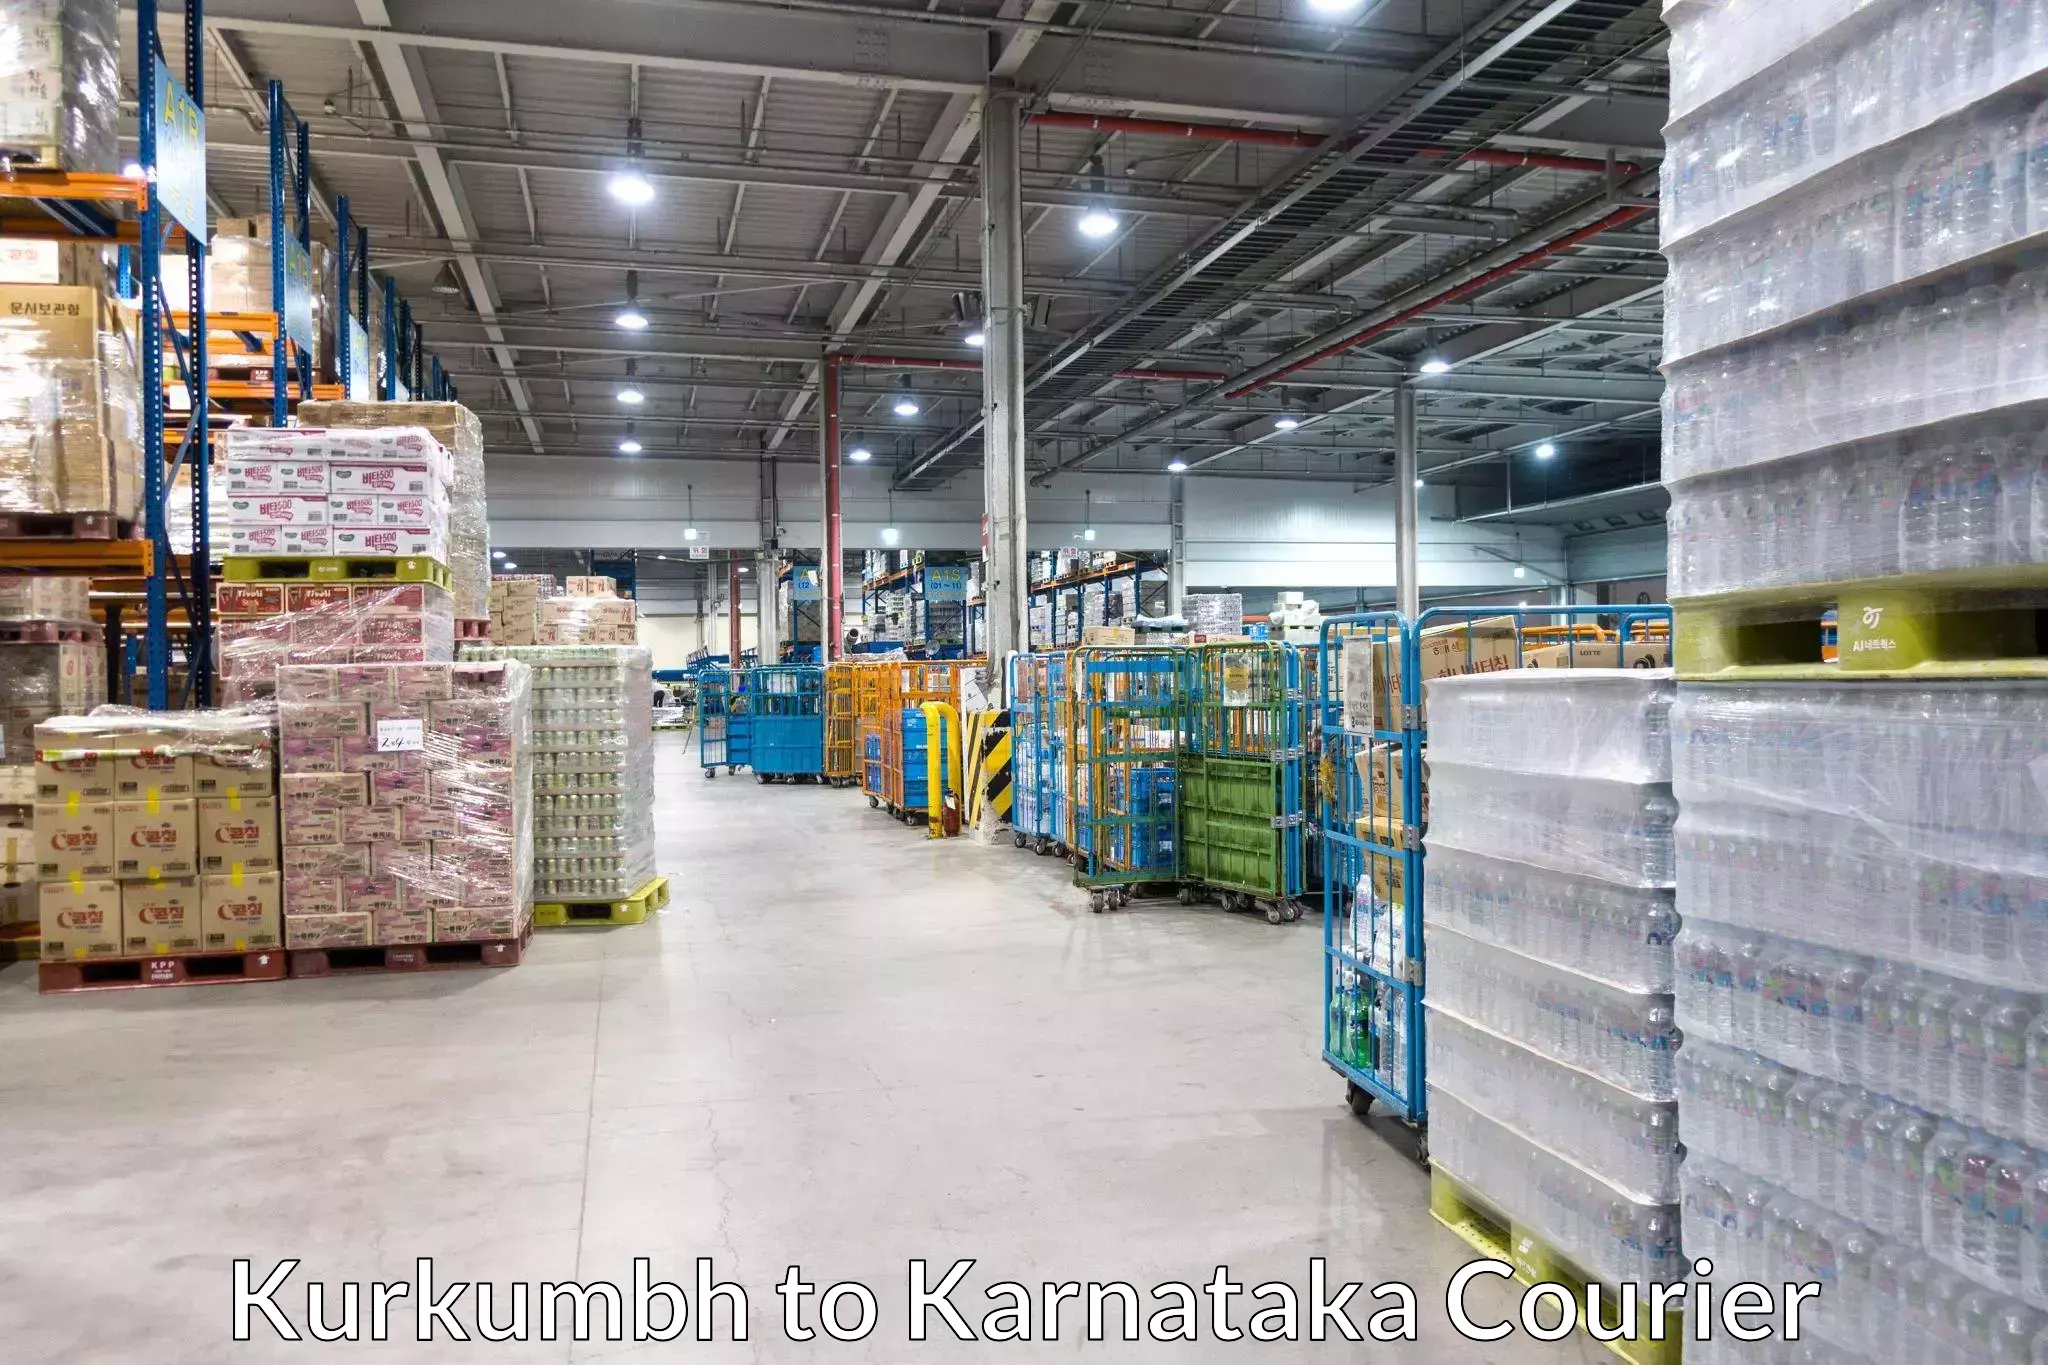 Round-the-clock parcel delivery Kurkumbh to Karnataka